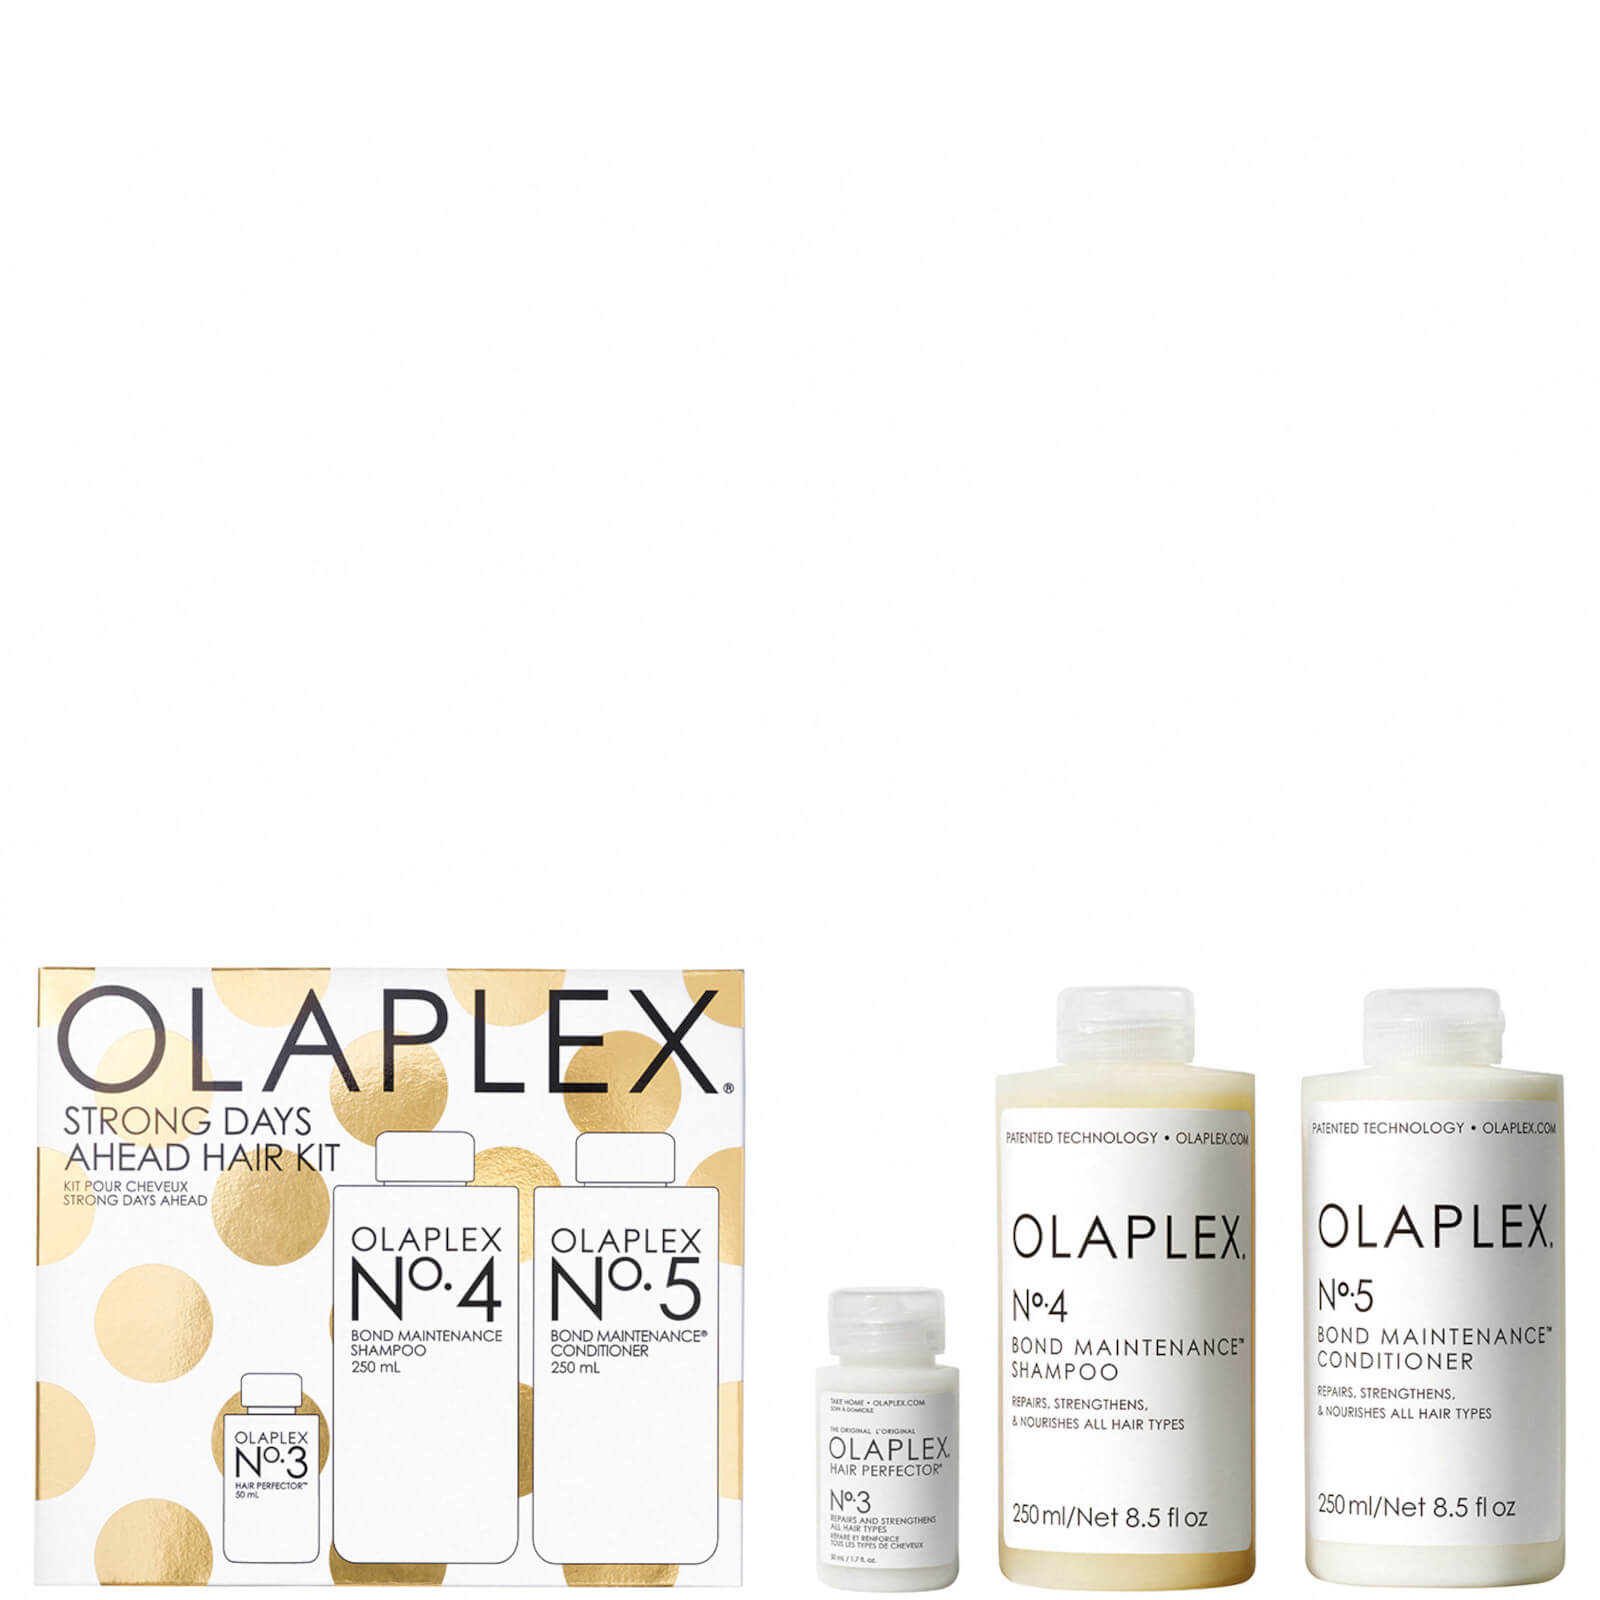 Olaplex Strong Days Ahead Hair Kit (Worth £72.00)